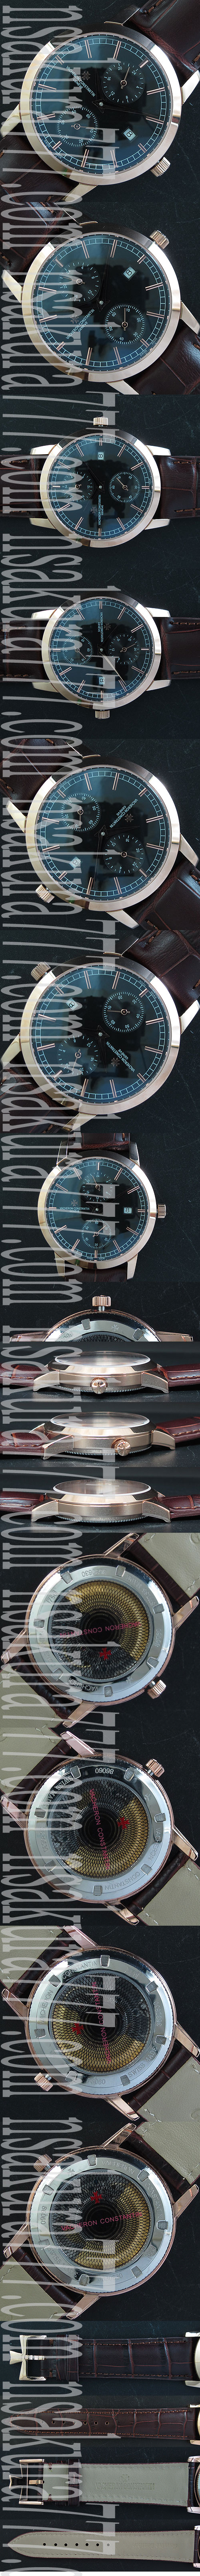 レプリカ時計バセロン コンスタンチン パトリモニートラディショナル， Asian ETAムーブ搭載 - ウインドウを閉じる